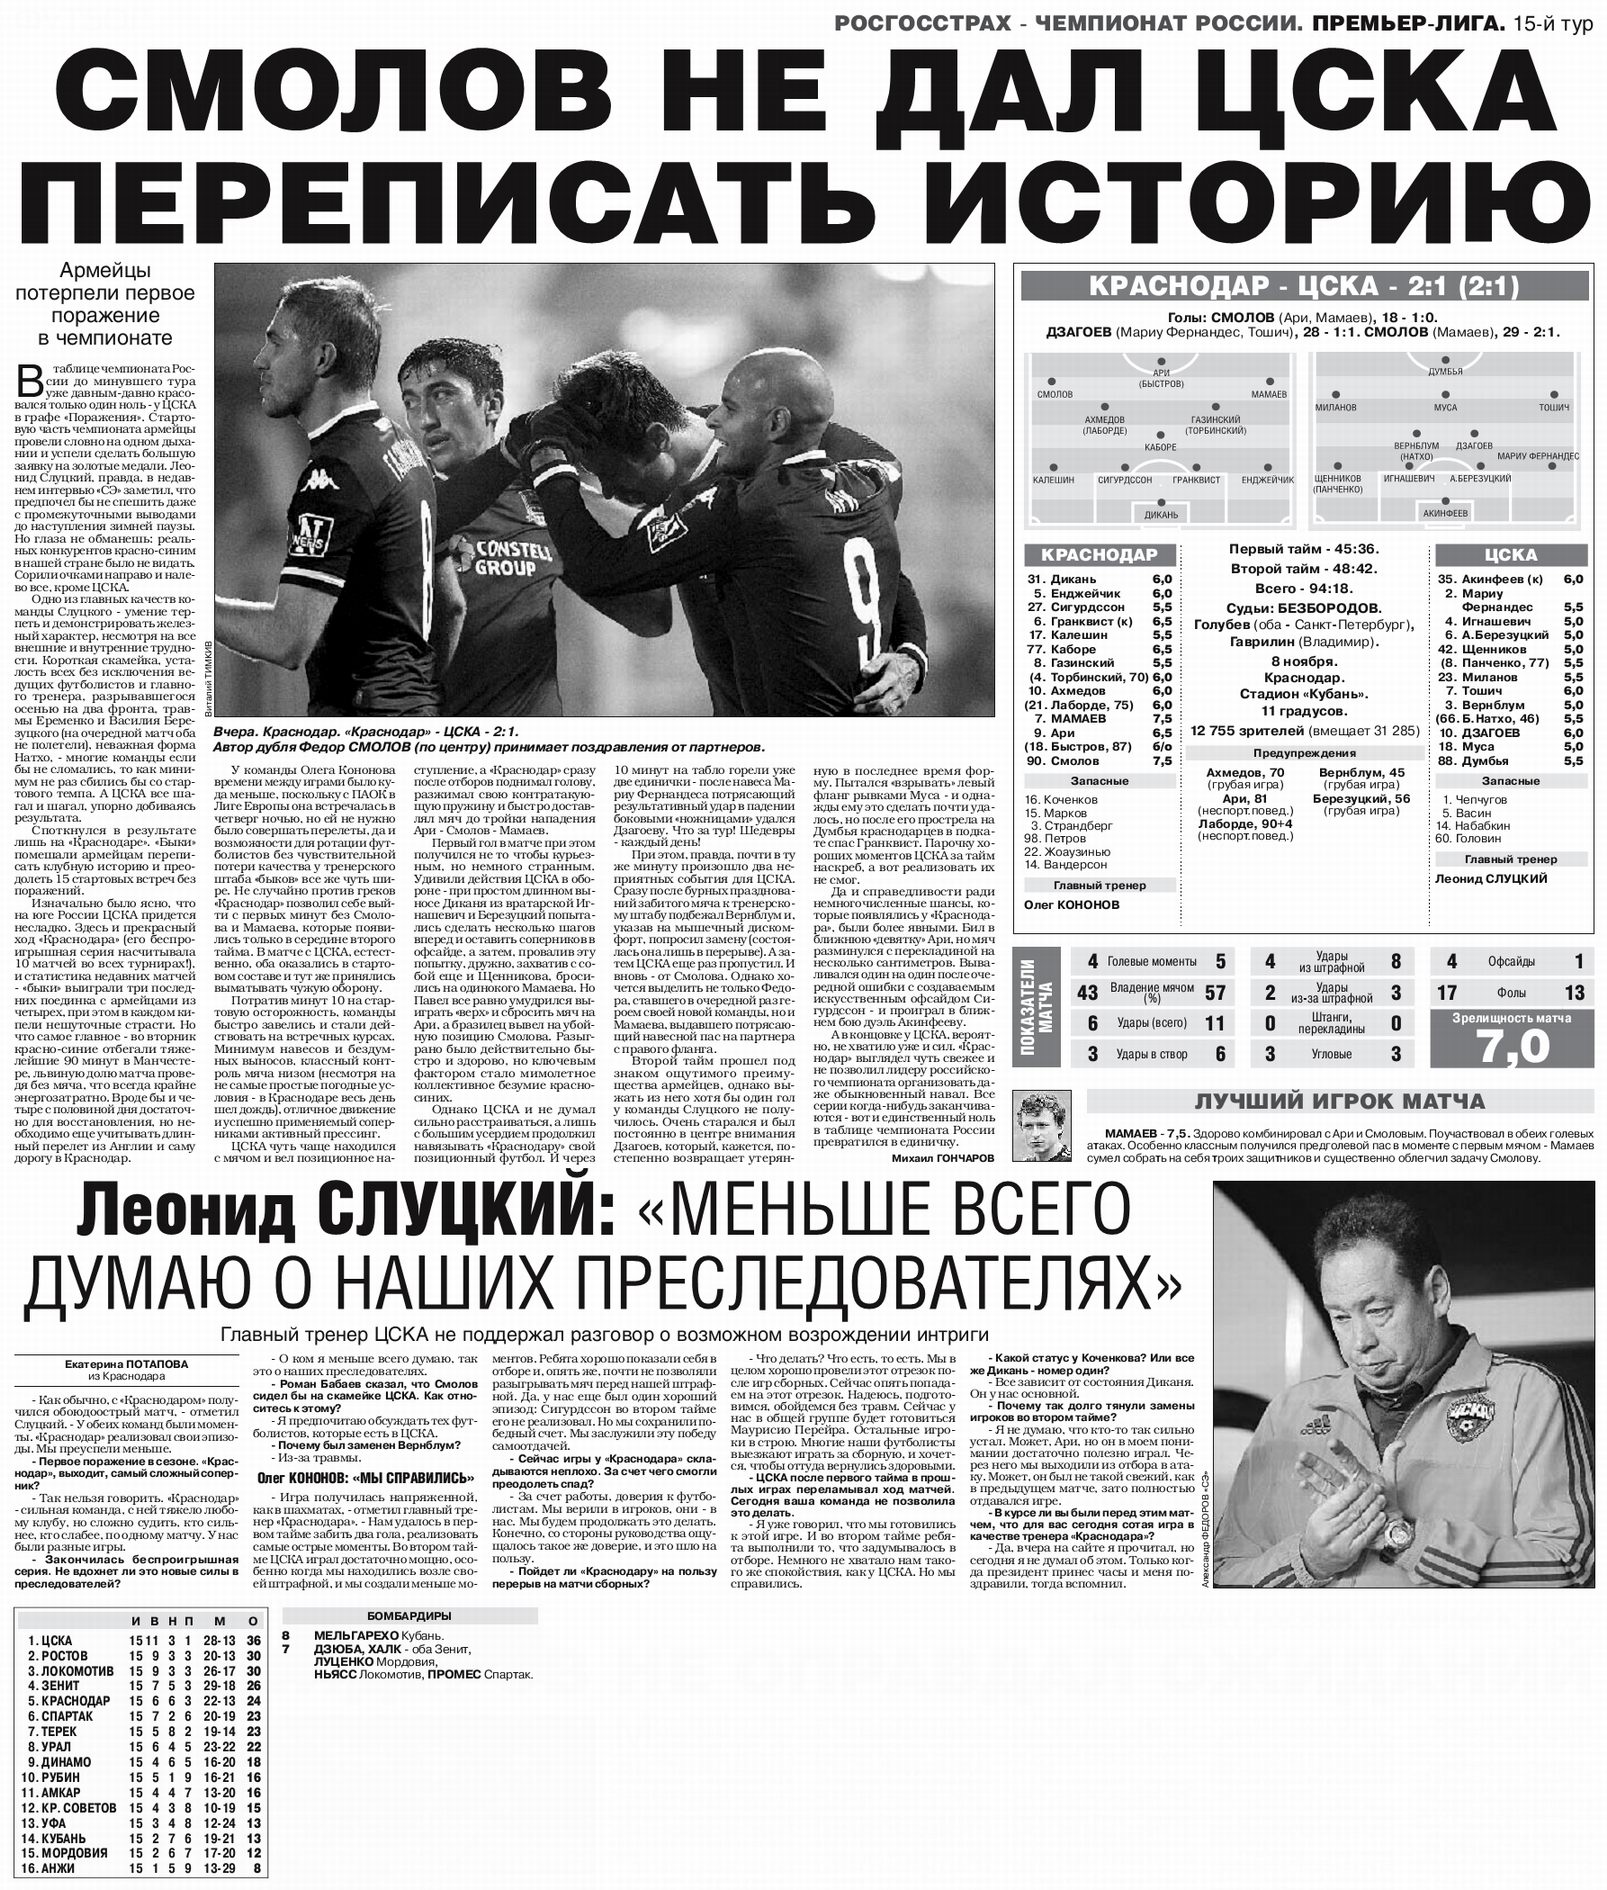 2015-11-08.Krasnodar-CSKA